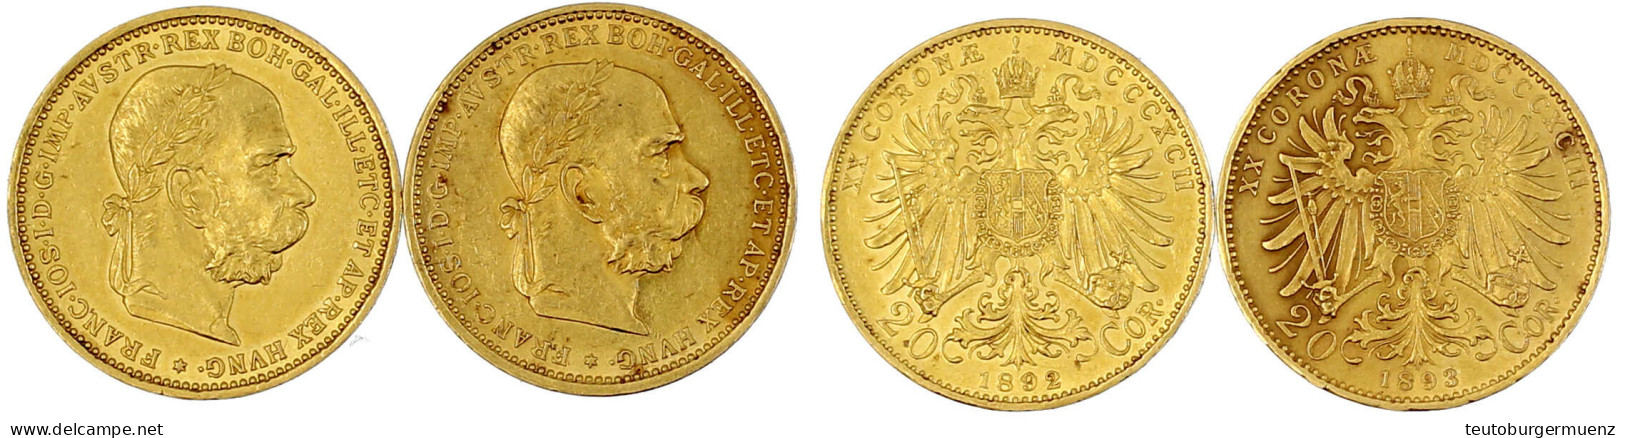 2 X 20 Kronen 1892 Und 1893. Je 6,78 G. 900/1000. Beide Vorzüglich. Herinek 330, 331. Friedberg 421. - Monedas En Oro